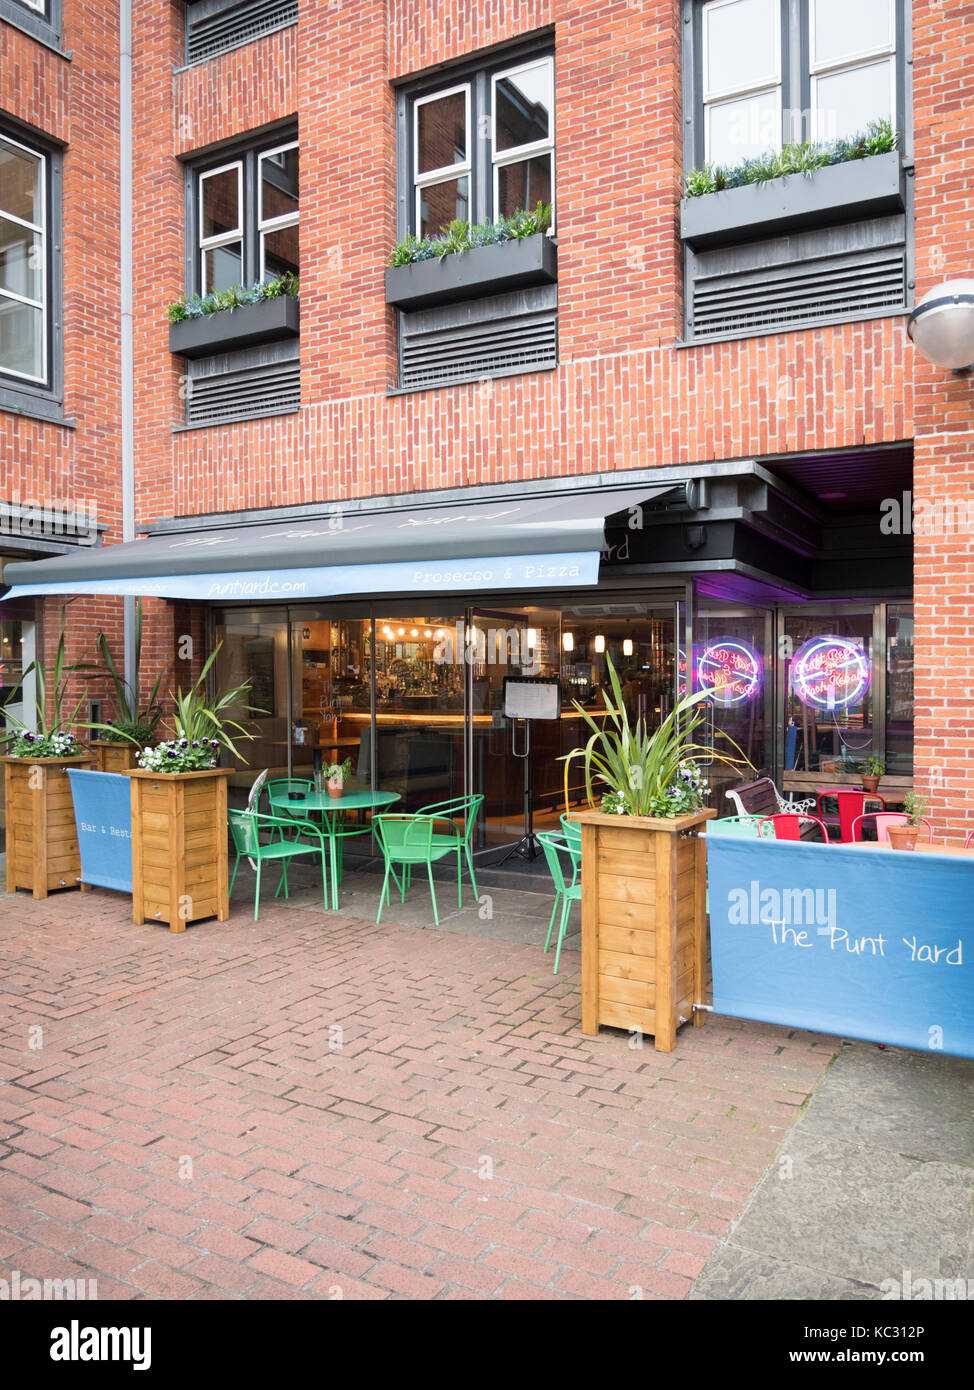 El Punt jardín restaurante y cafetería en el Quayside, Cambridge, Reino Unido Foto de stock